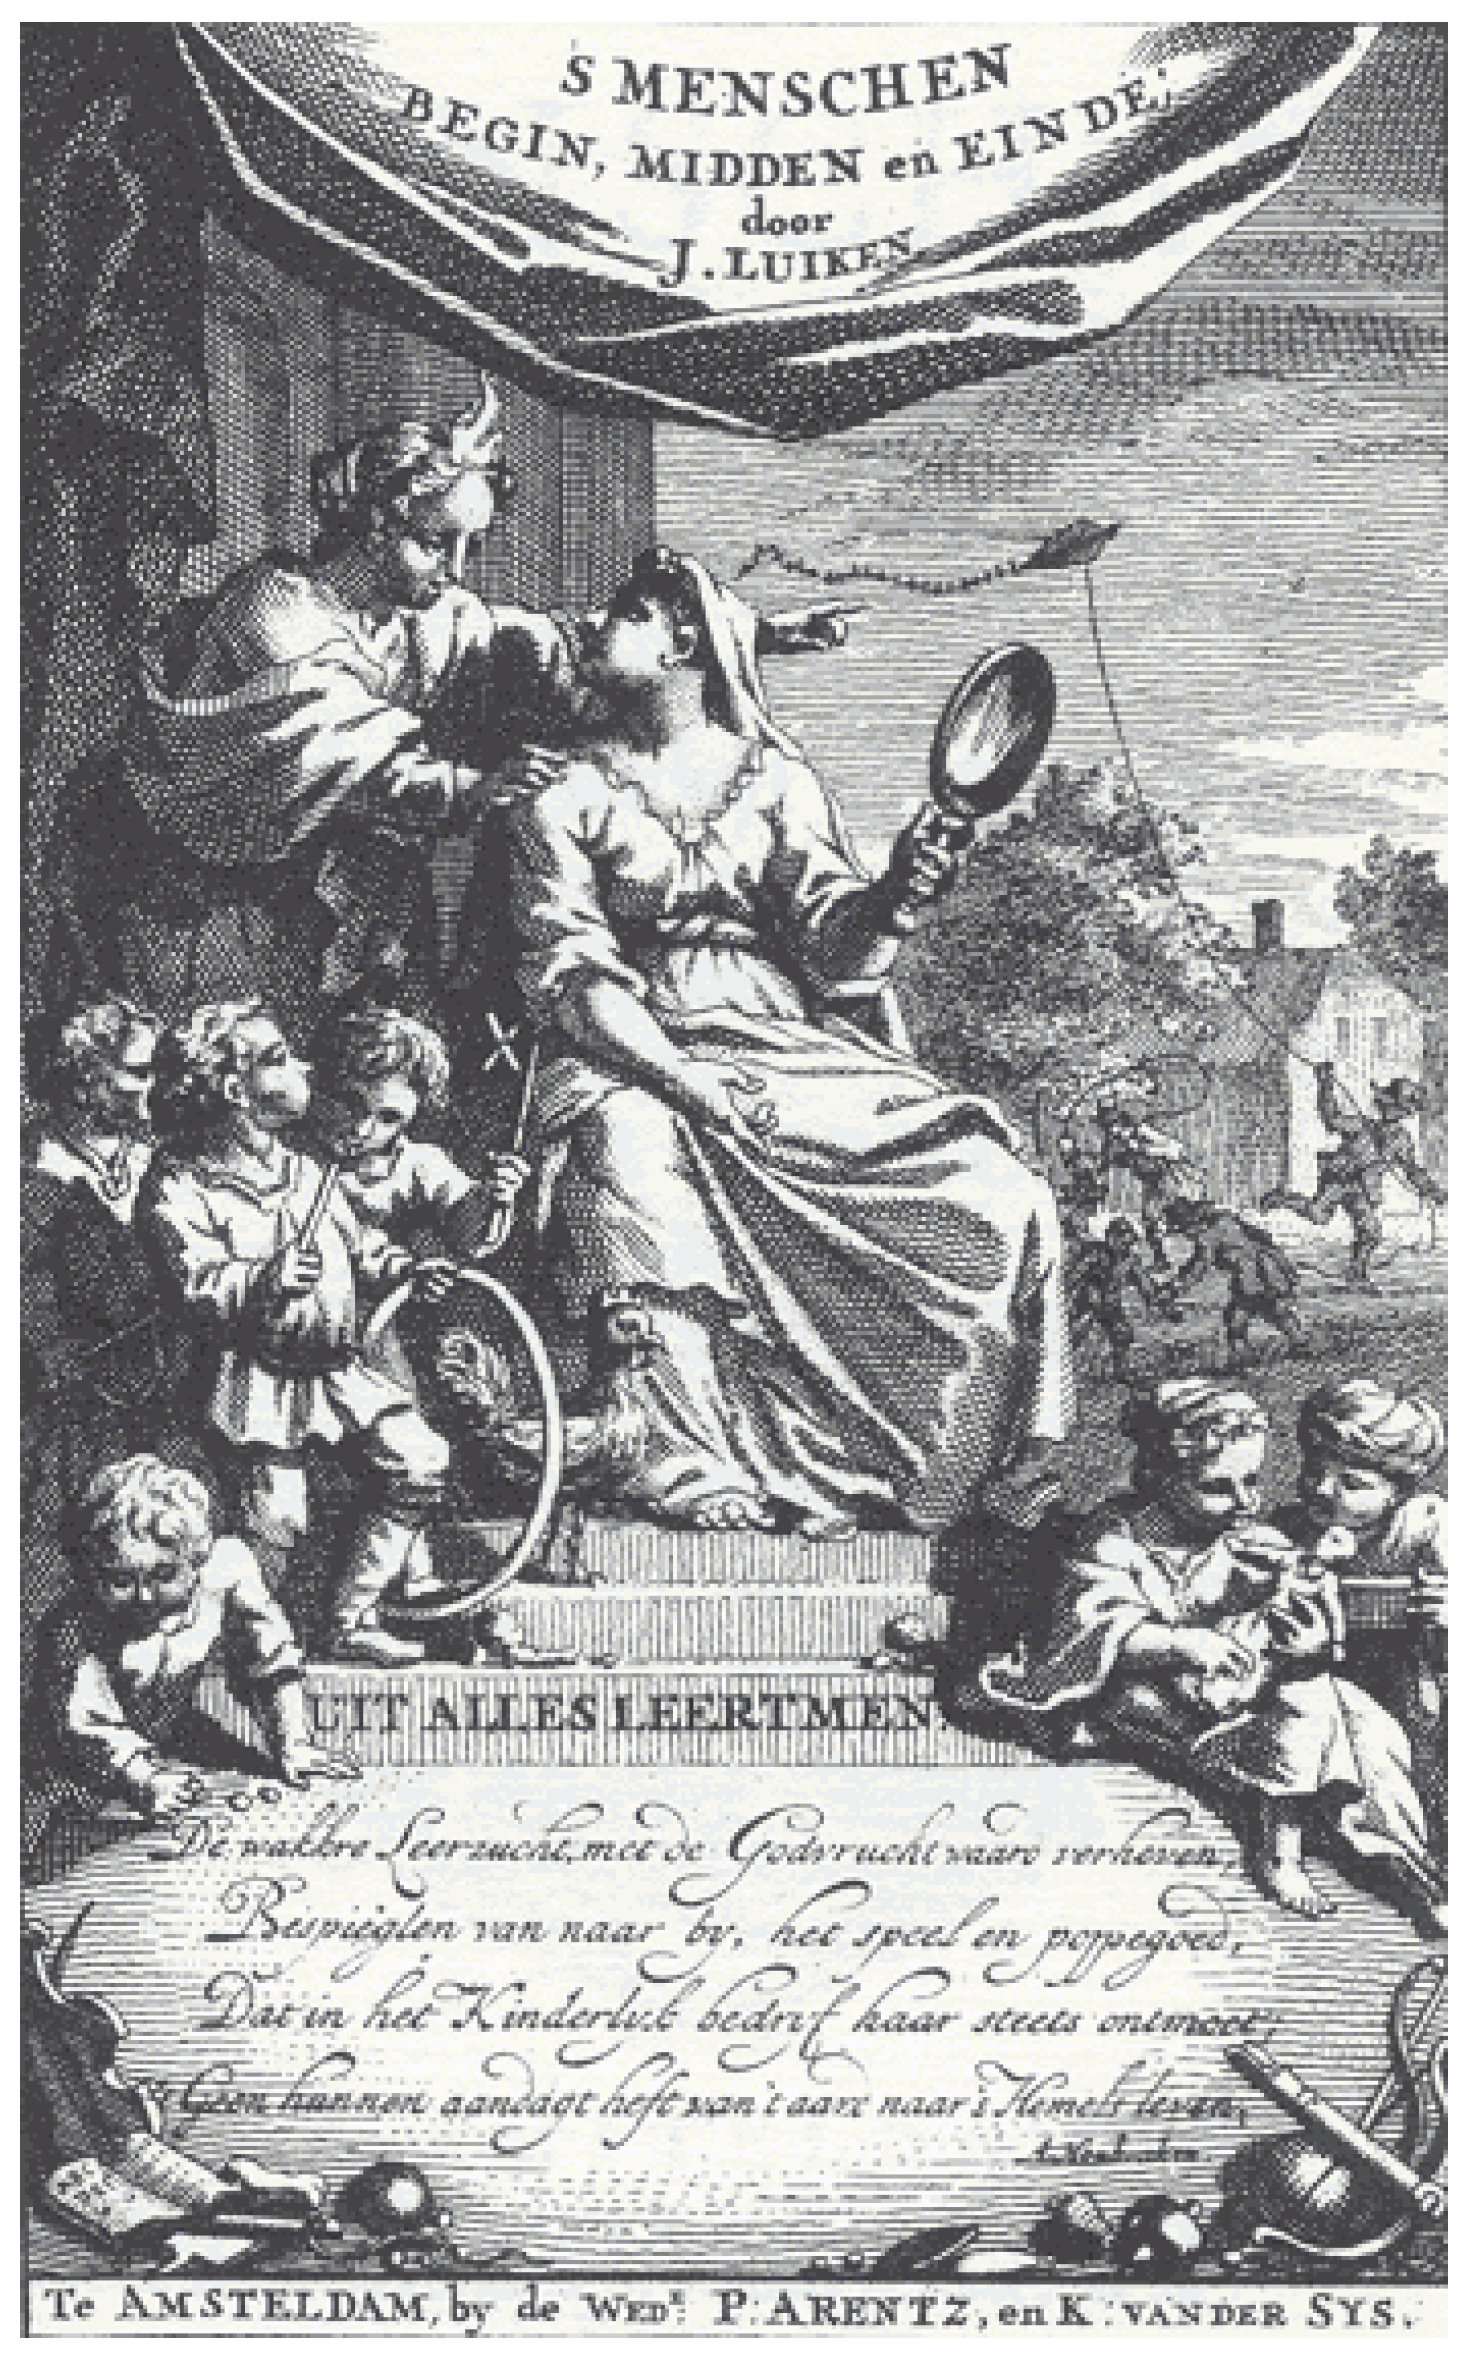 Begin, Humanities Free in The Luyken’s Dutch Influence | Emblematic Menschen, Prints: (1712) Full-Text Jan Genre | Midden en Einde of Des Painting